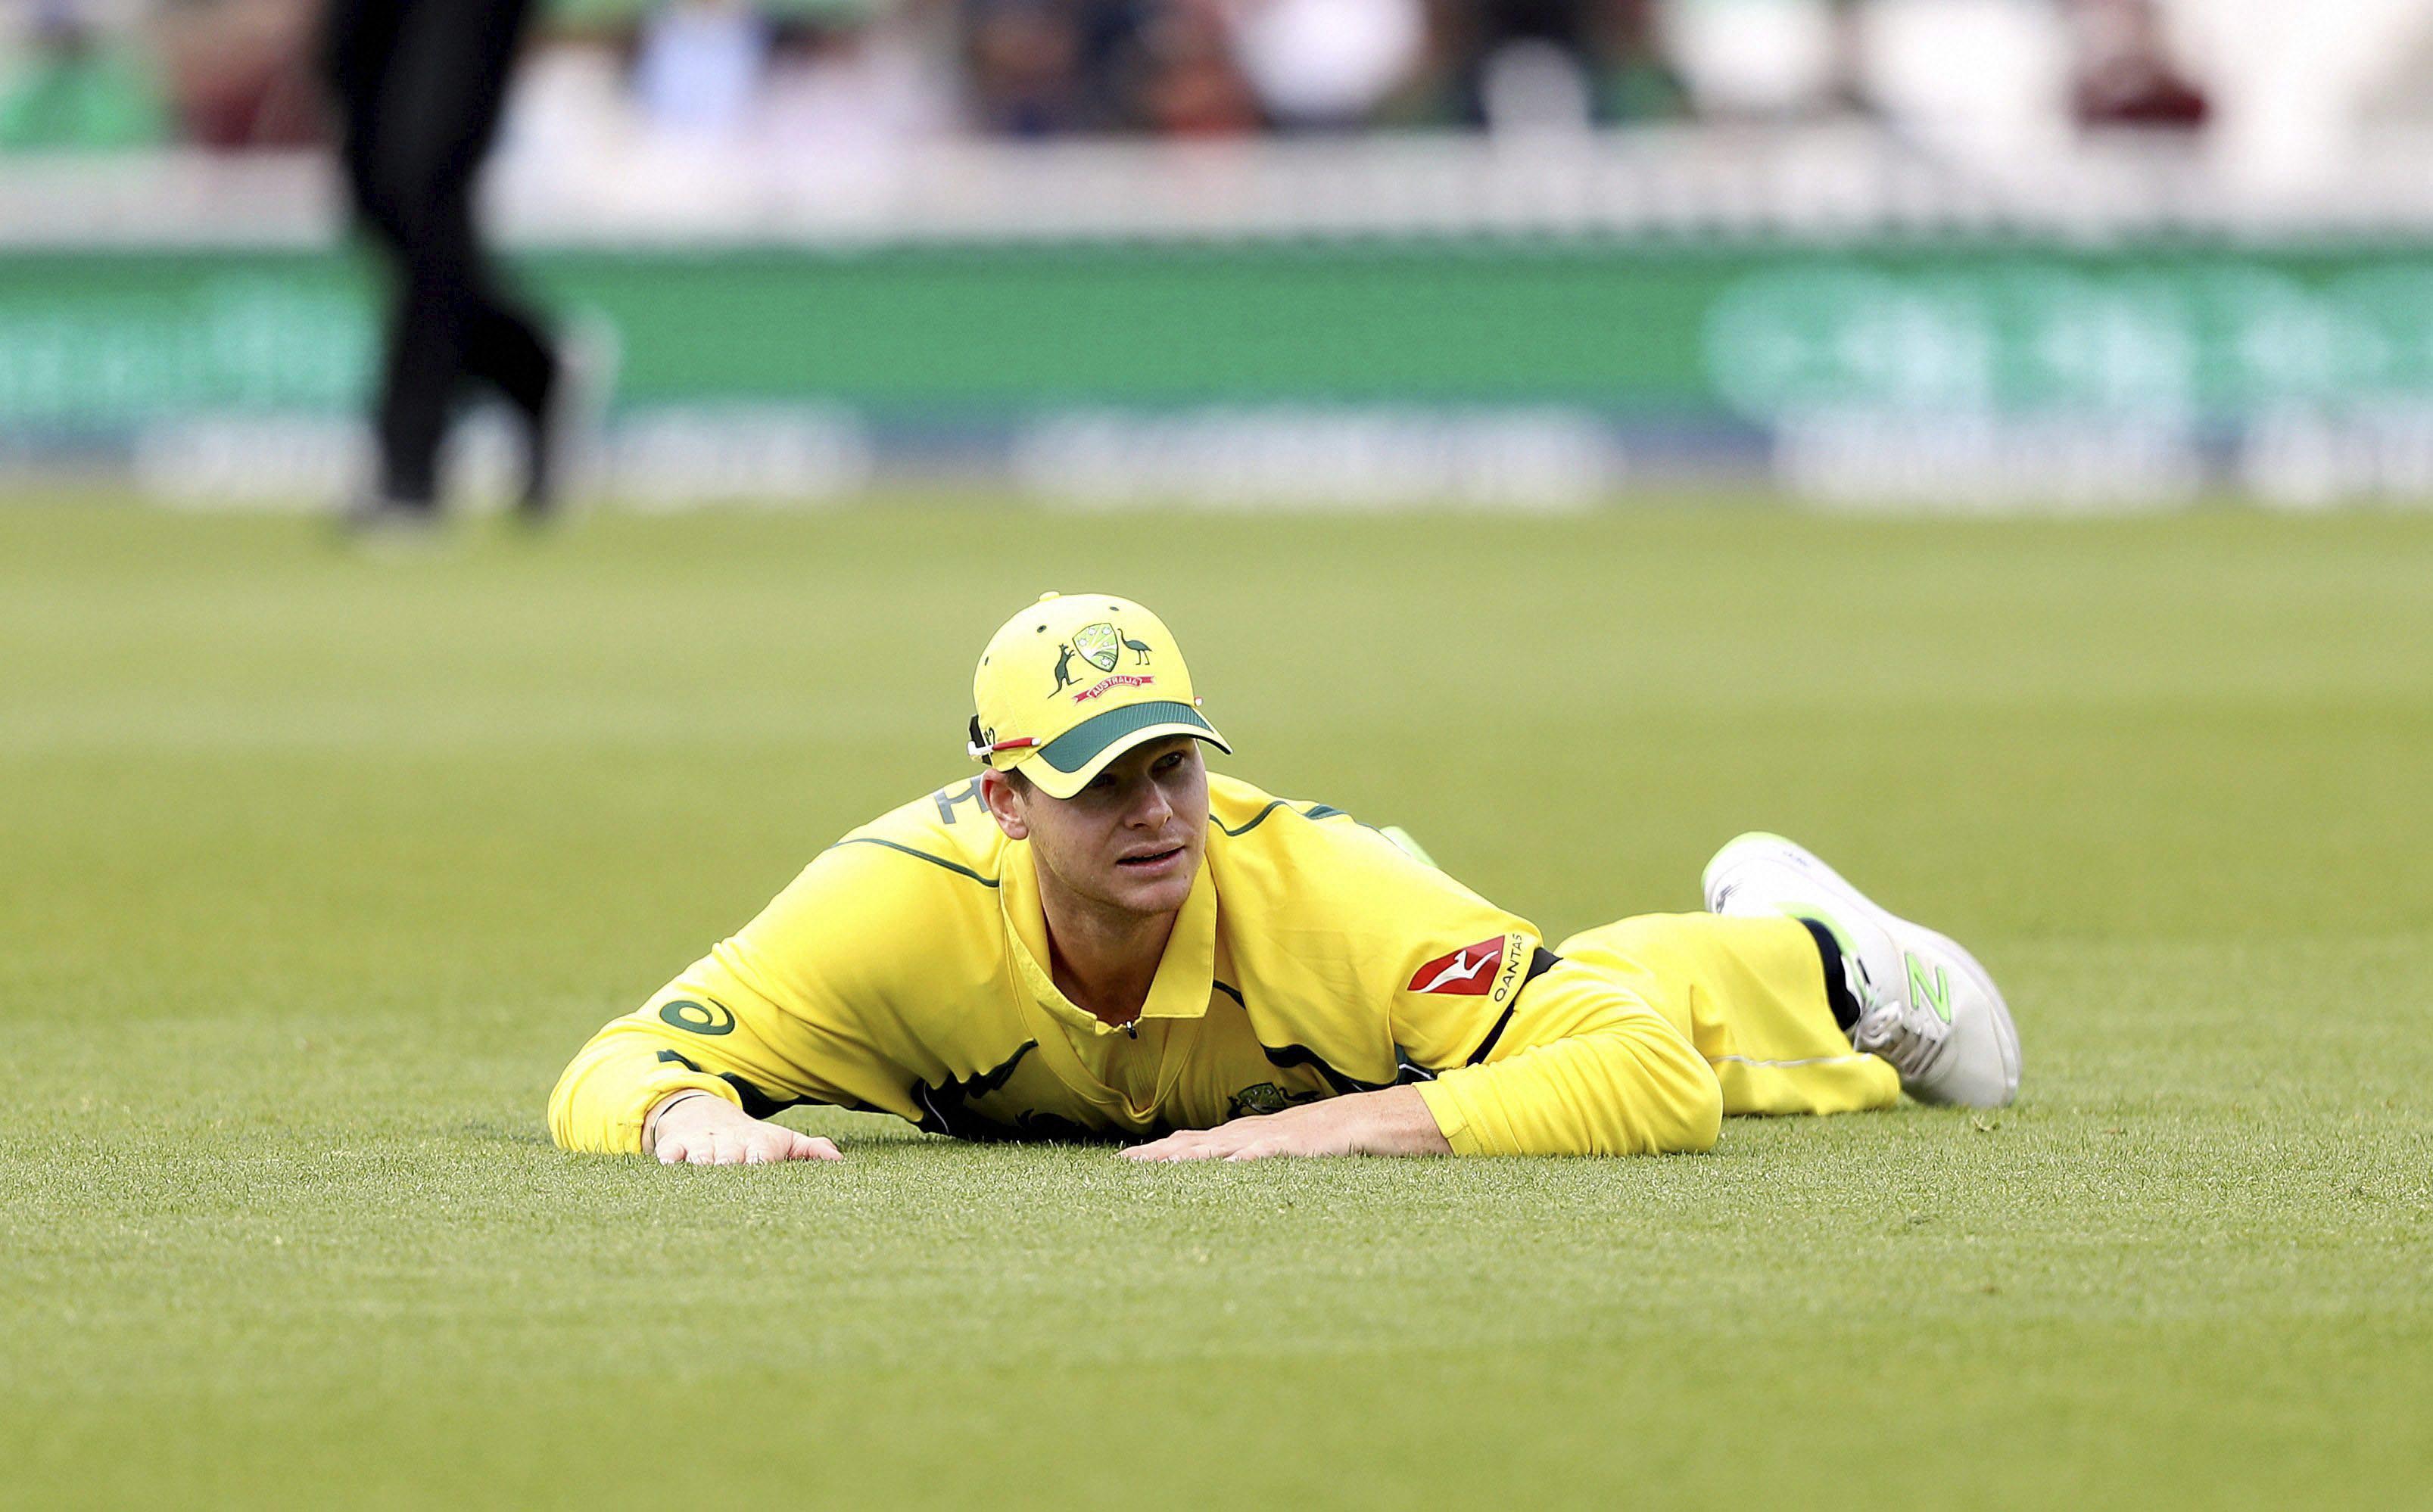 भारत के खिलाफ होने वाली टी-20 सीरीज में ऑस्ट्रेलिया को लगा बड़ा झटका, स्मिथ पहले मैच से बाहर 3